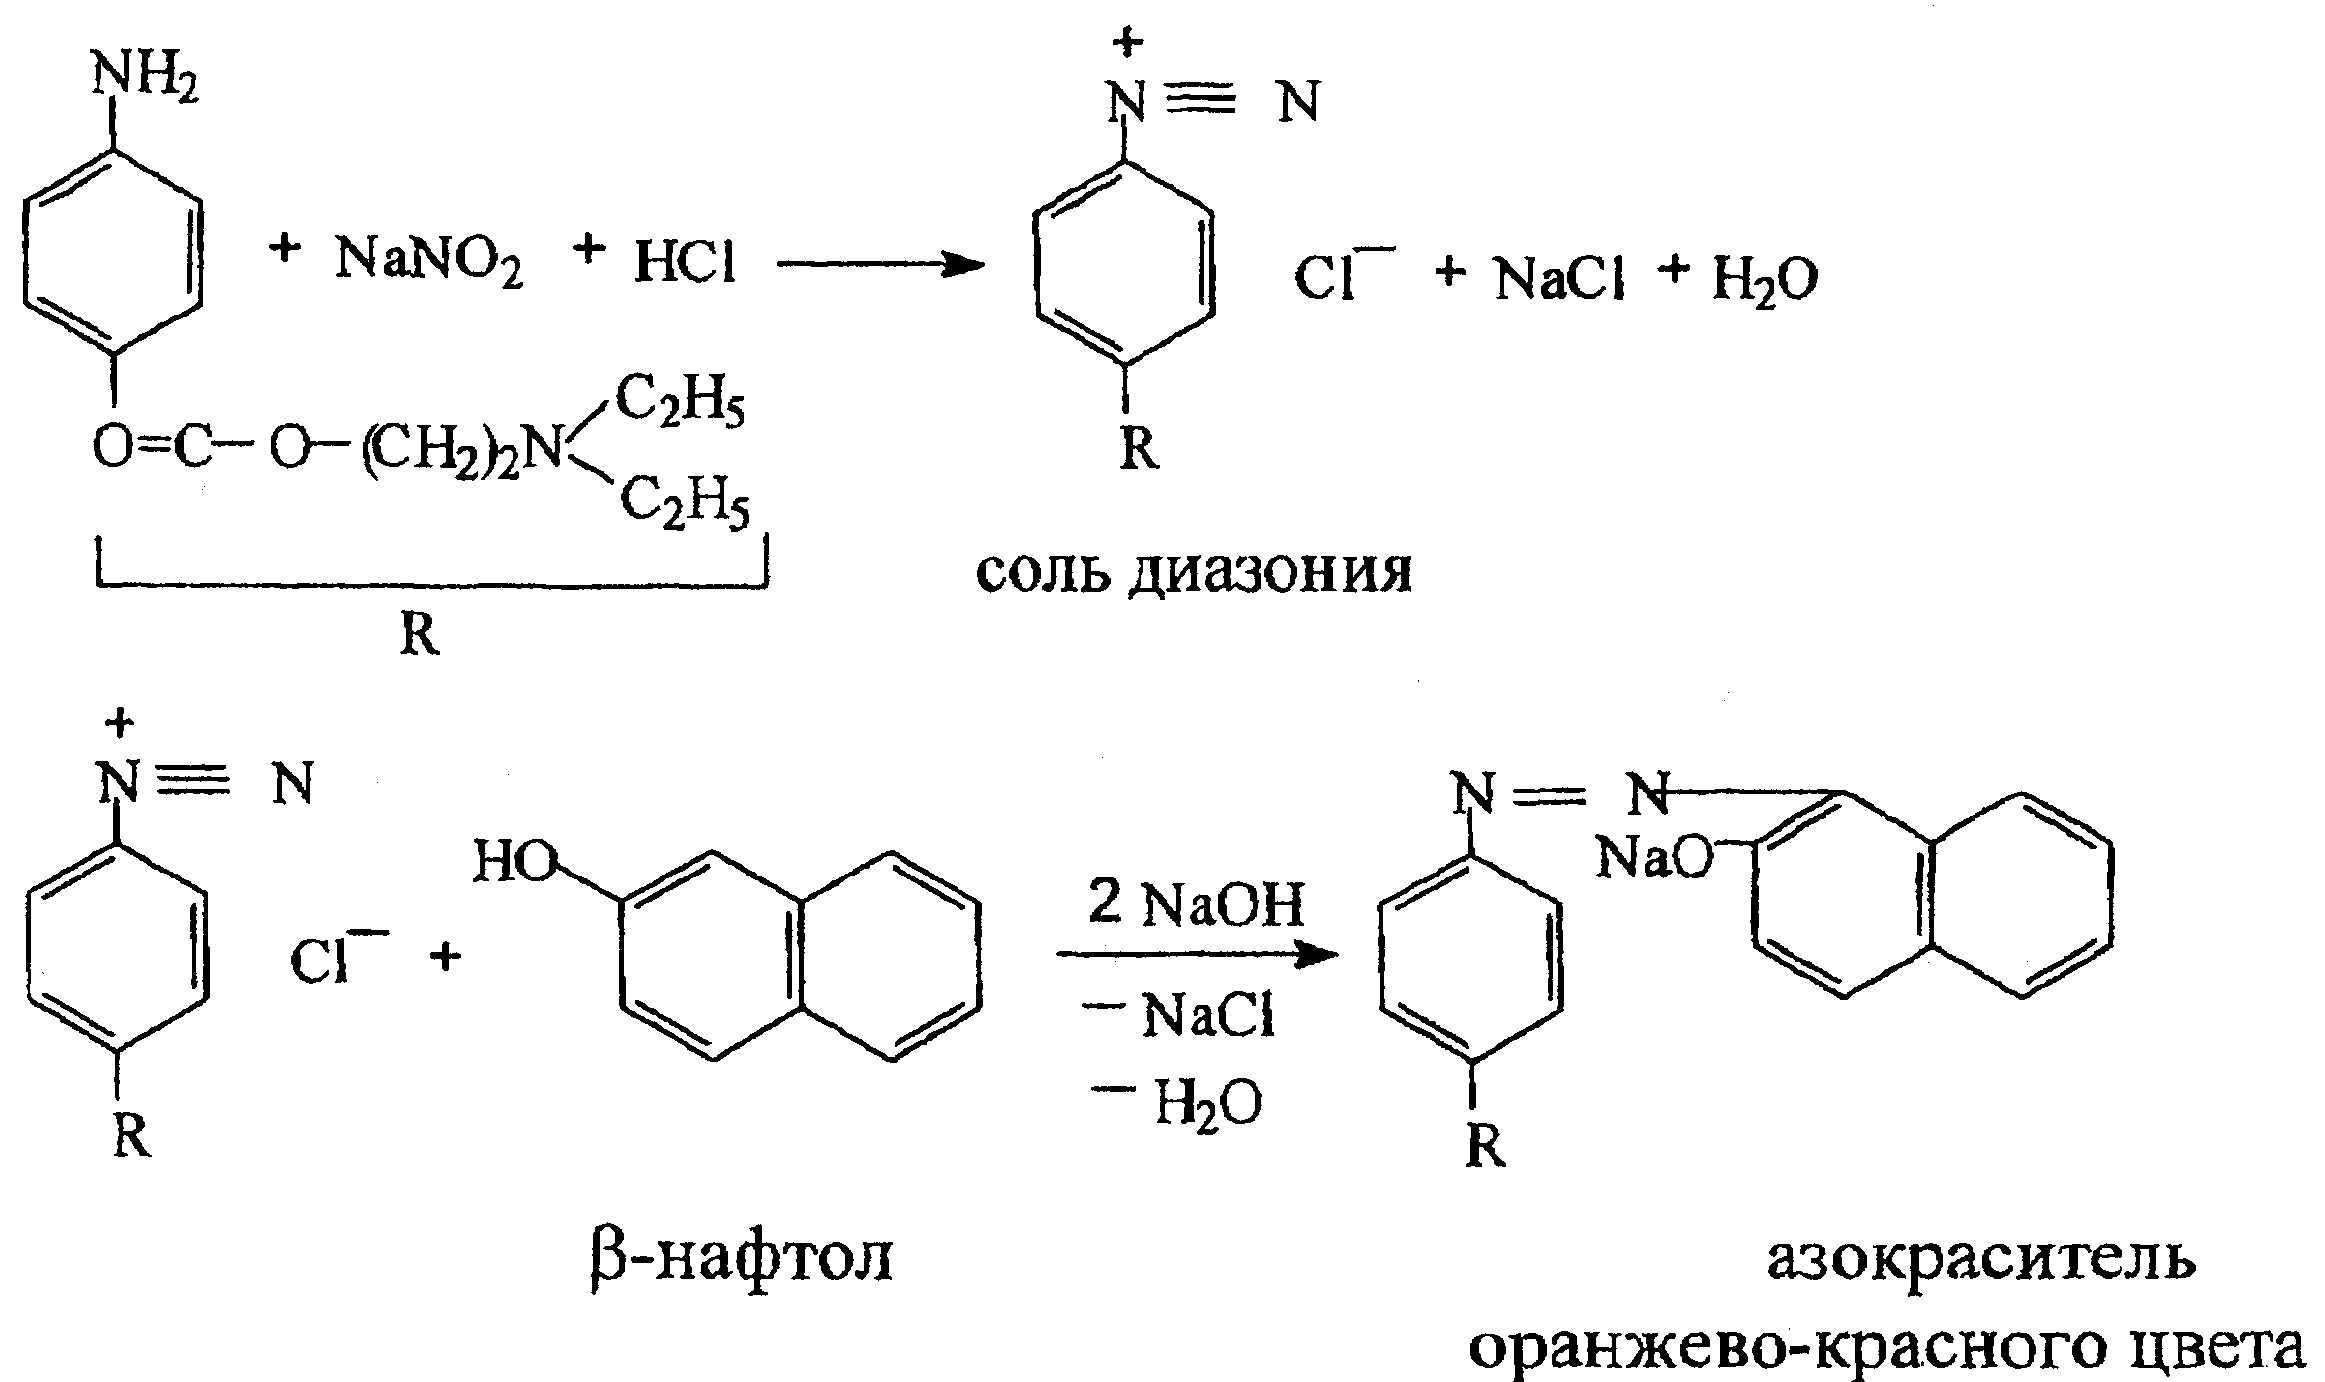 Be naoh h2o. Новокаин реакции подлинности. Реакция диазотирования новокаина. Прокаина гидрохлорид подлинность реакции. Прокаина гидрохлорид нитритометрия.